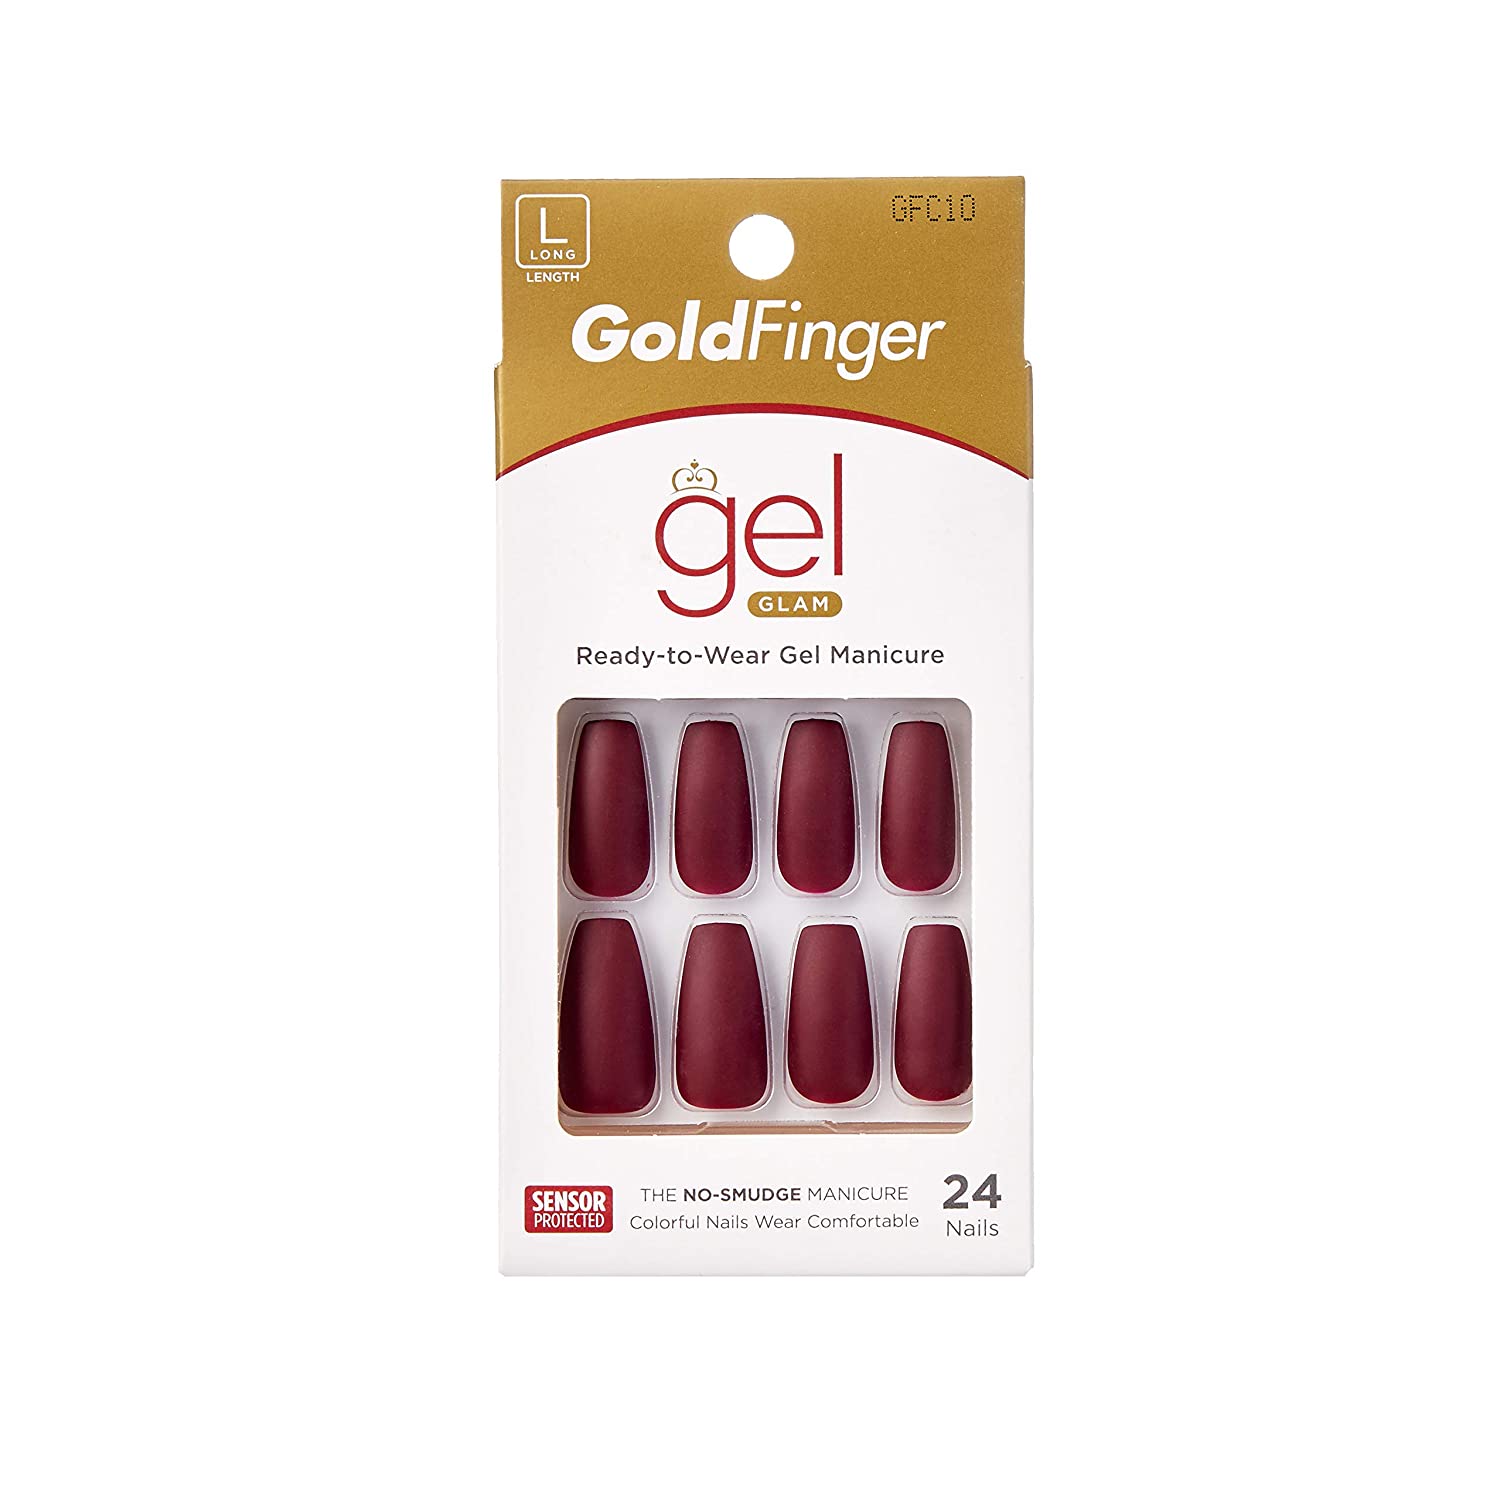 Kiss GoldFinger Gel Glam Ready-to-Wear Gel Manicure (GFC10)